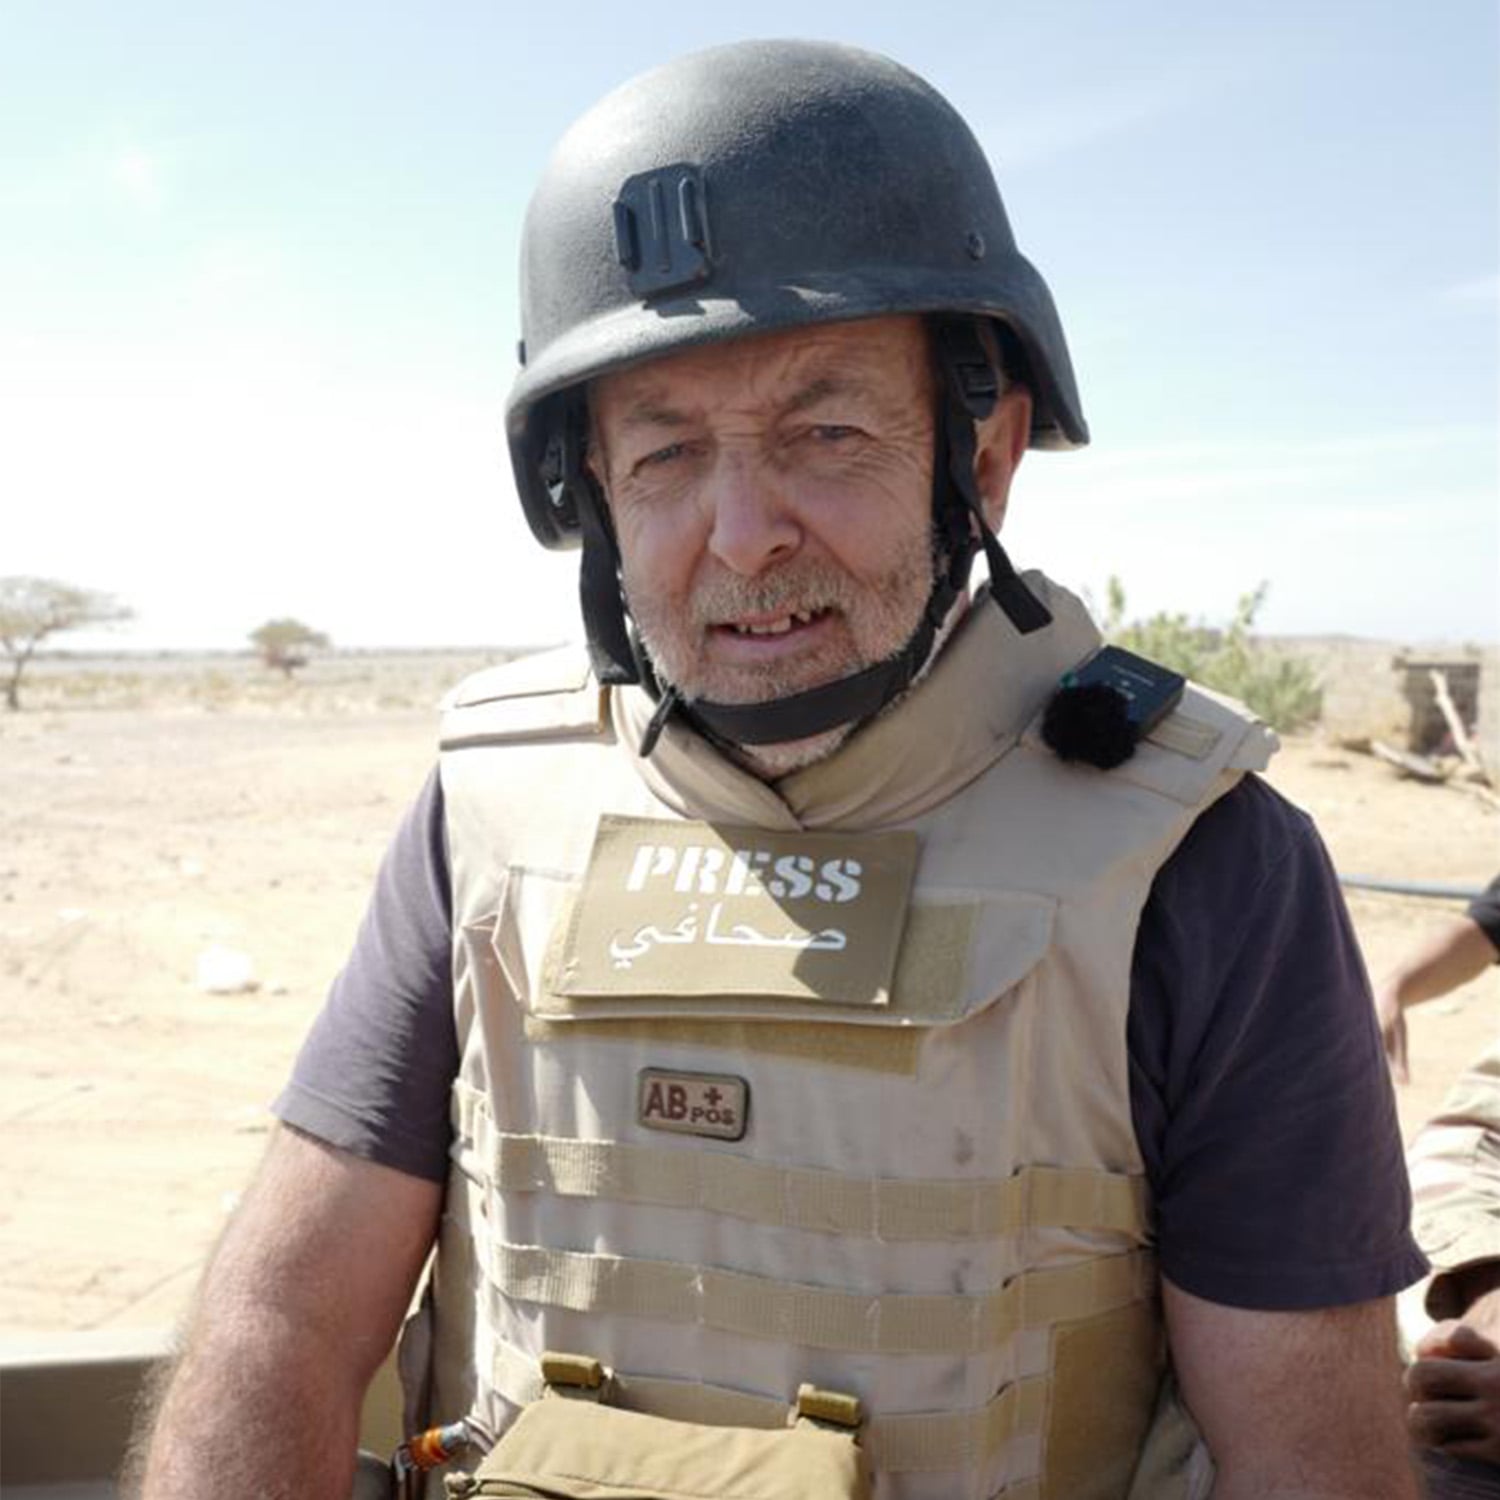 Portrait of Jeremy Bowen in press war gear